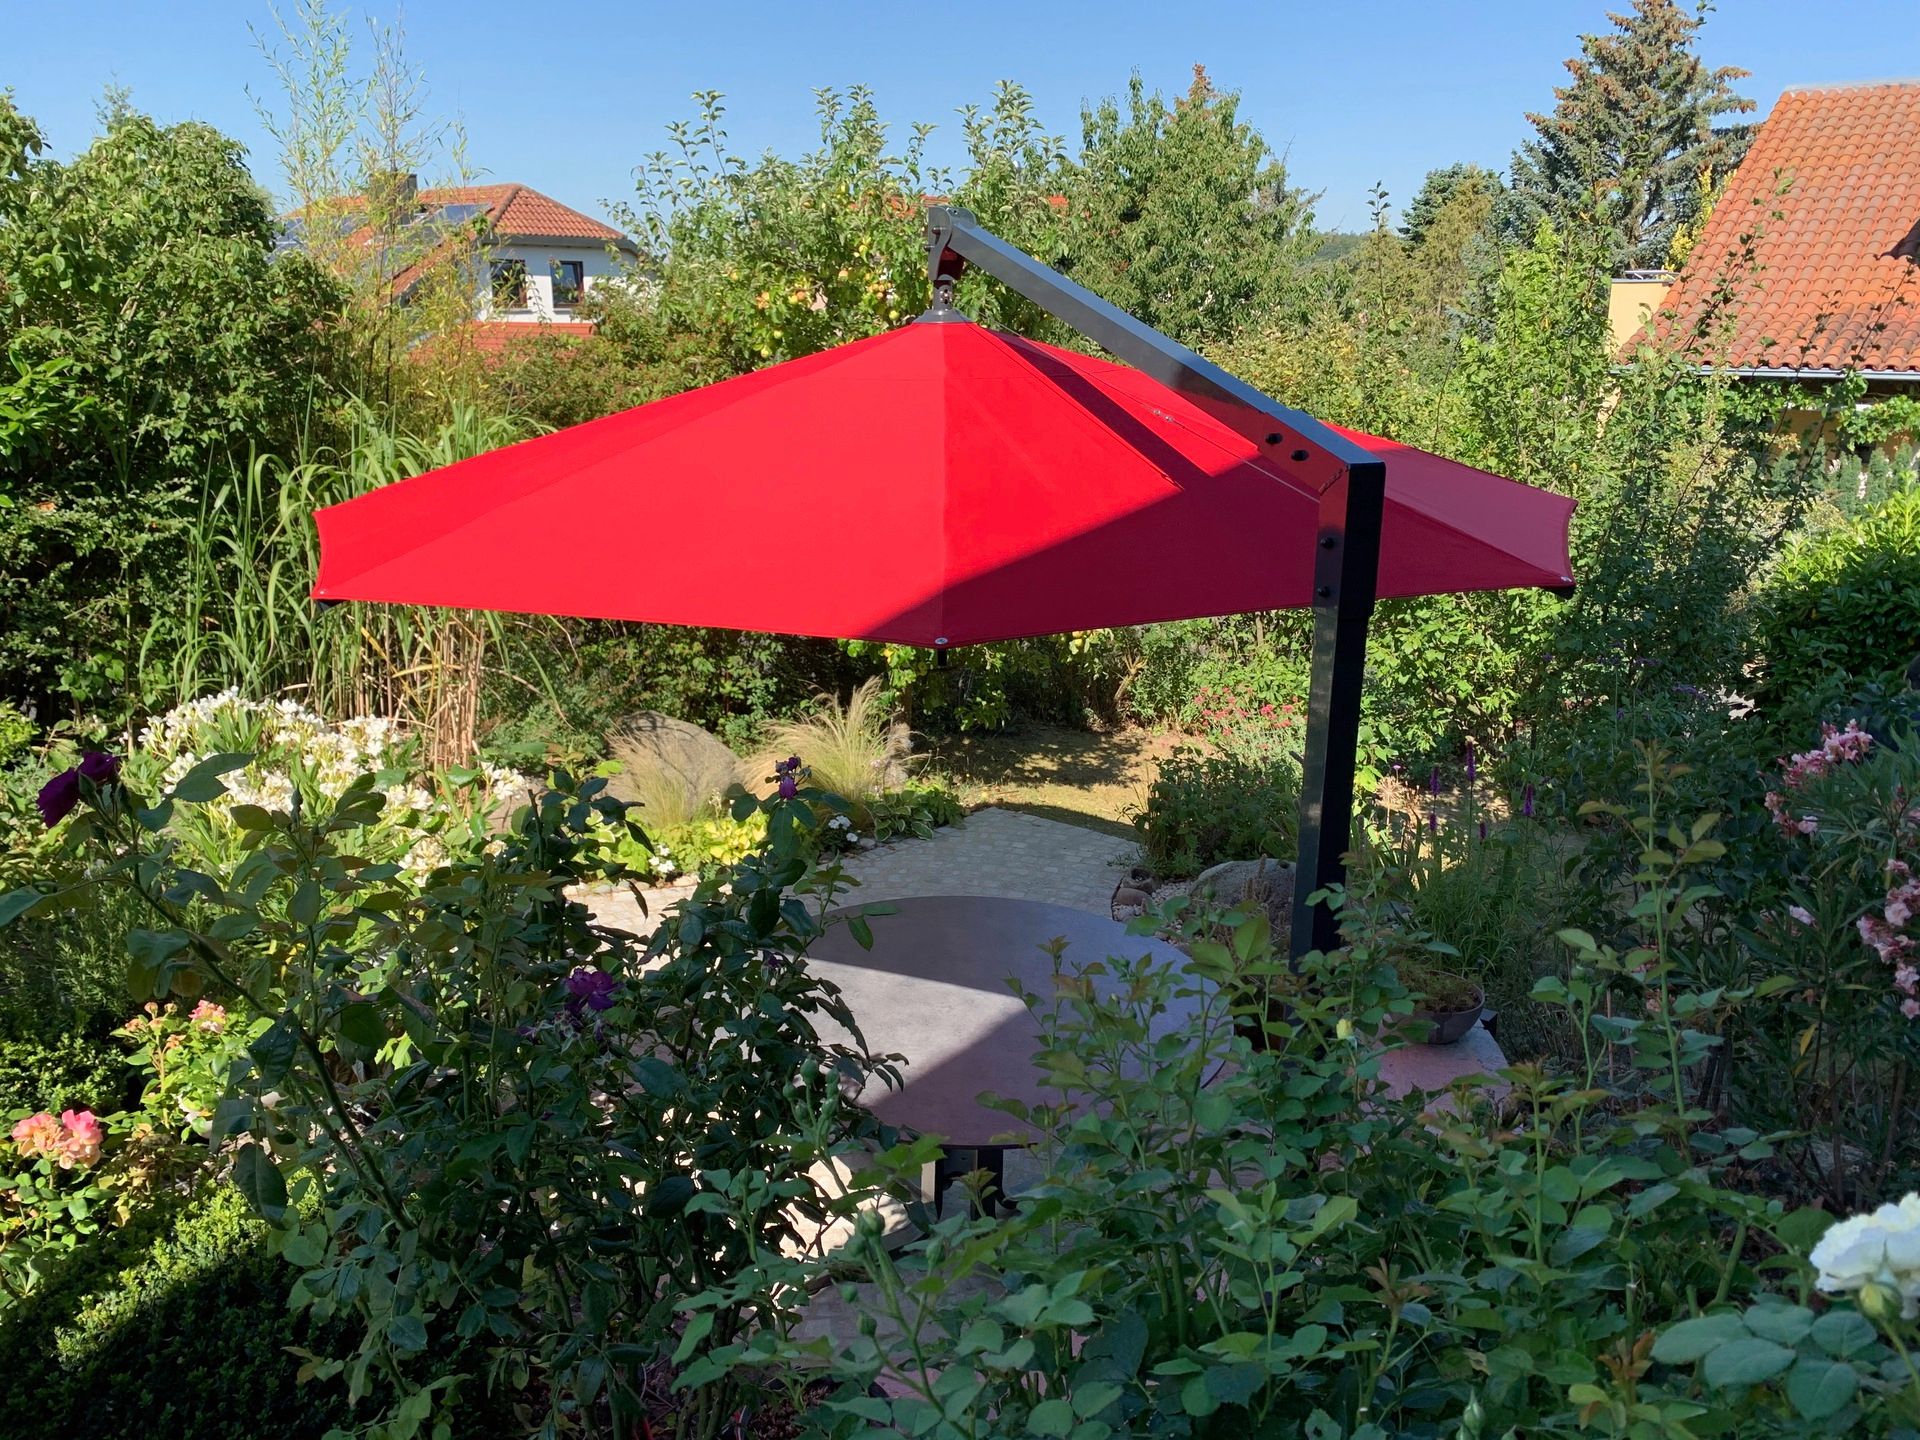 Caravita Sonnenschirme Amalfi mit roter Tuchbespannung ueber einer kleinen Sitzecke in einem Garten. LS Sonnenschutz Produktseite Sonnenschirme.